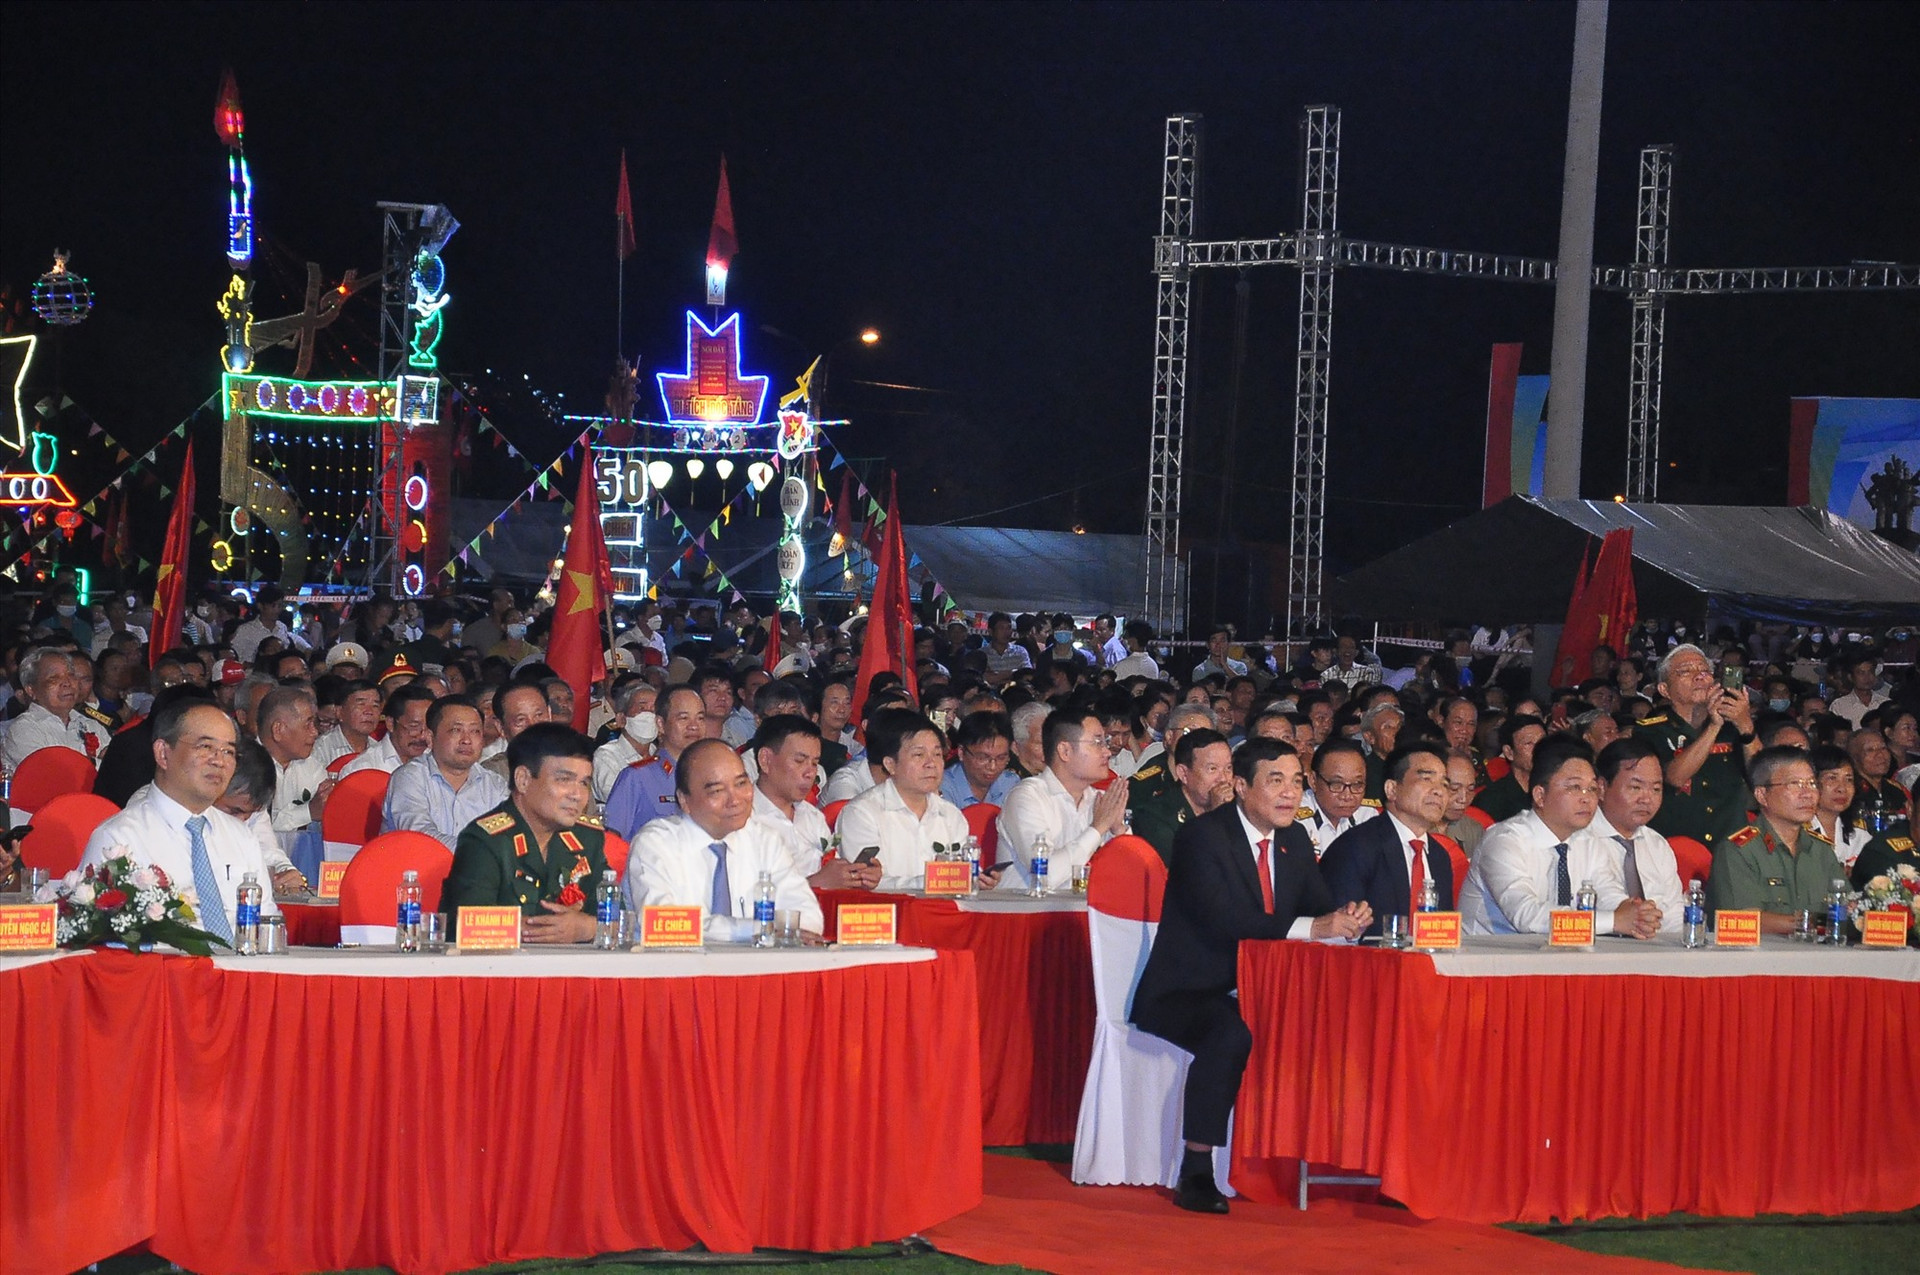 Chủ tịch nước Nguyễn Xuân Phúc cùng các đồng chí lãnh đạo tỉnh và các đại biểu tham dự buổi lễ. Ảnh: S.A